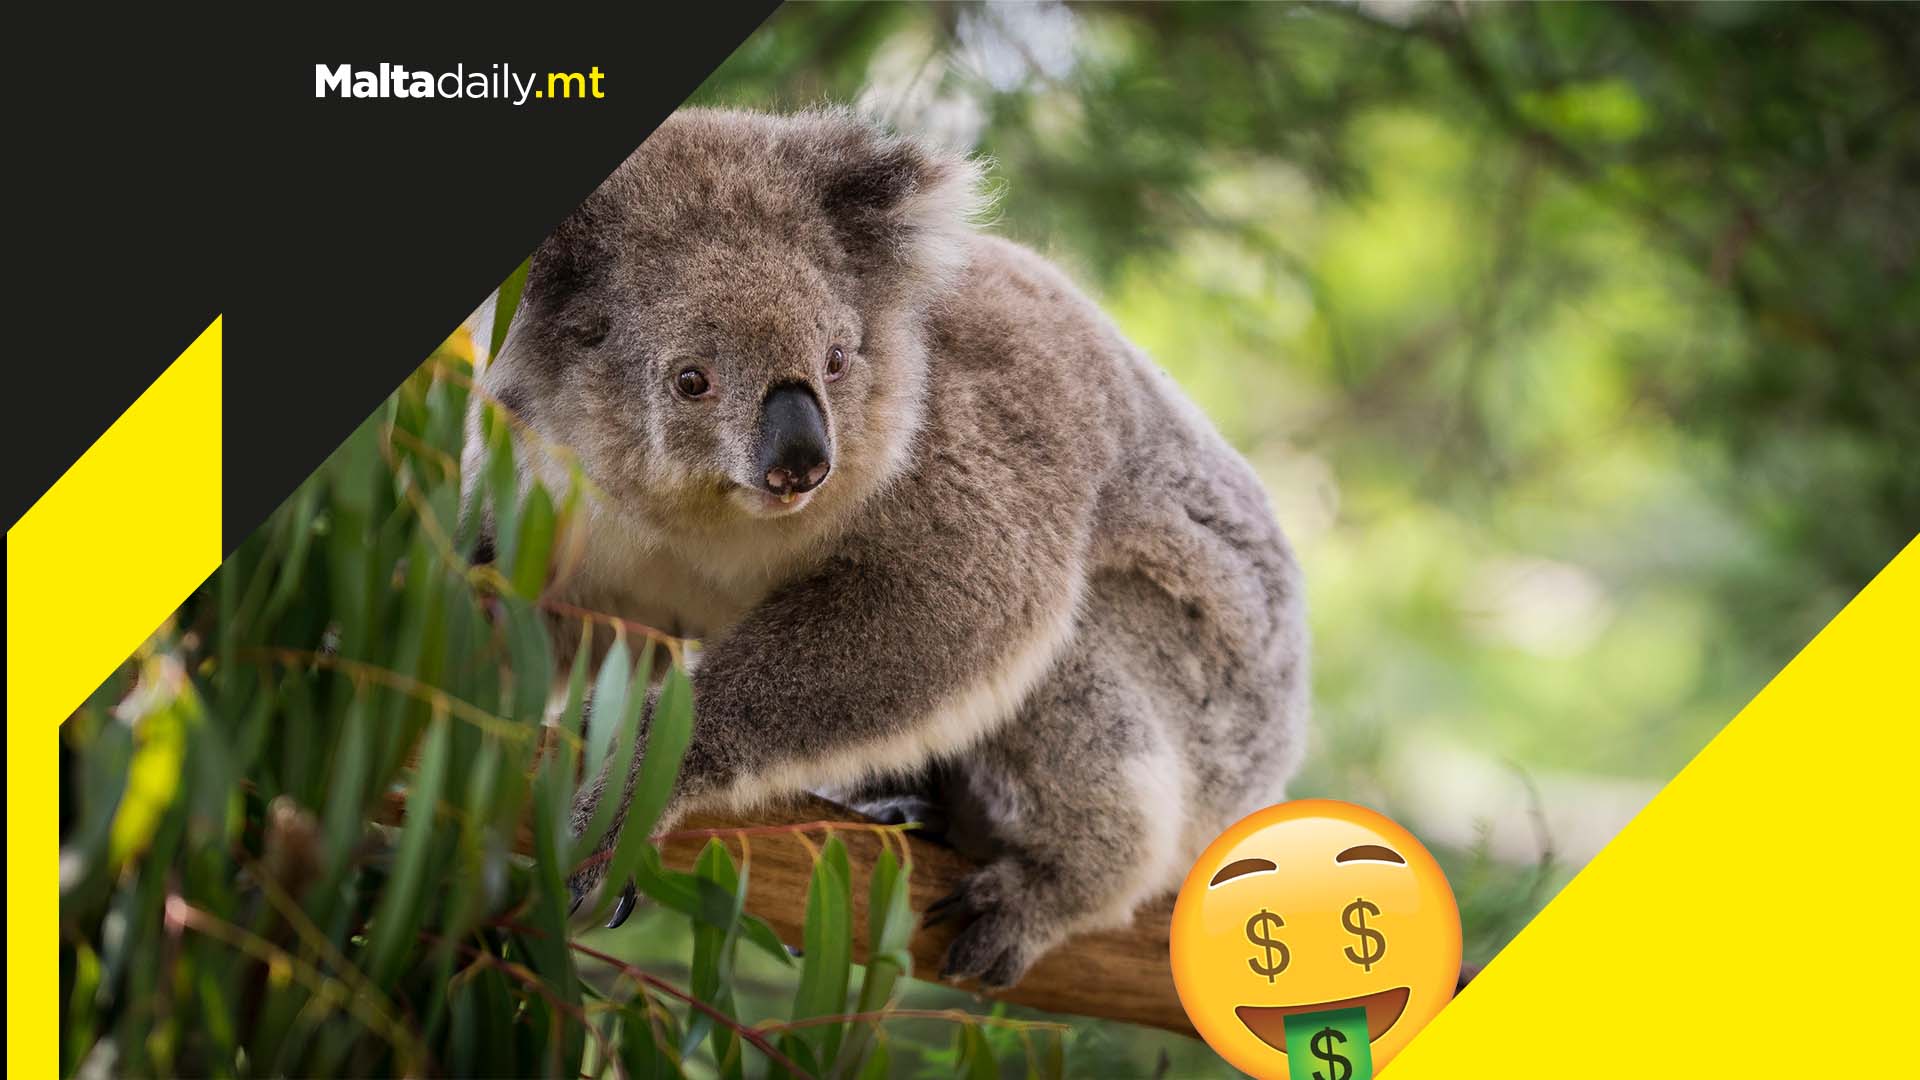 Australia set to spend a record $35 million to protect the koalas